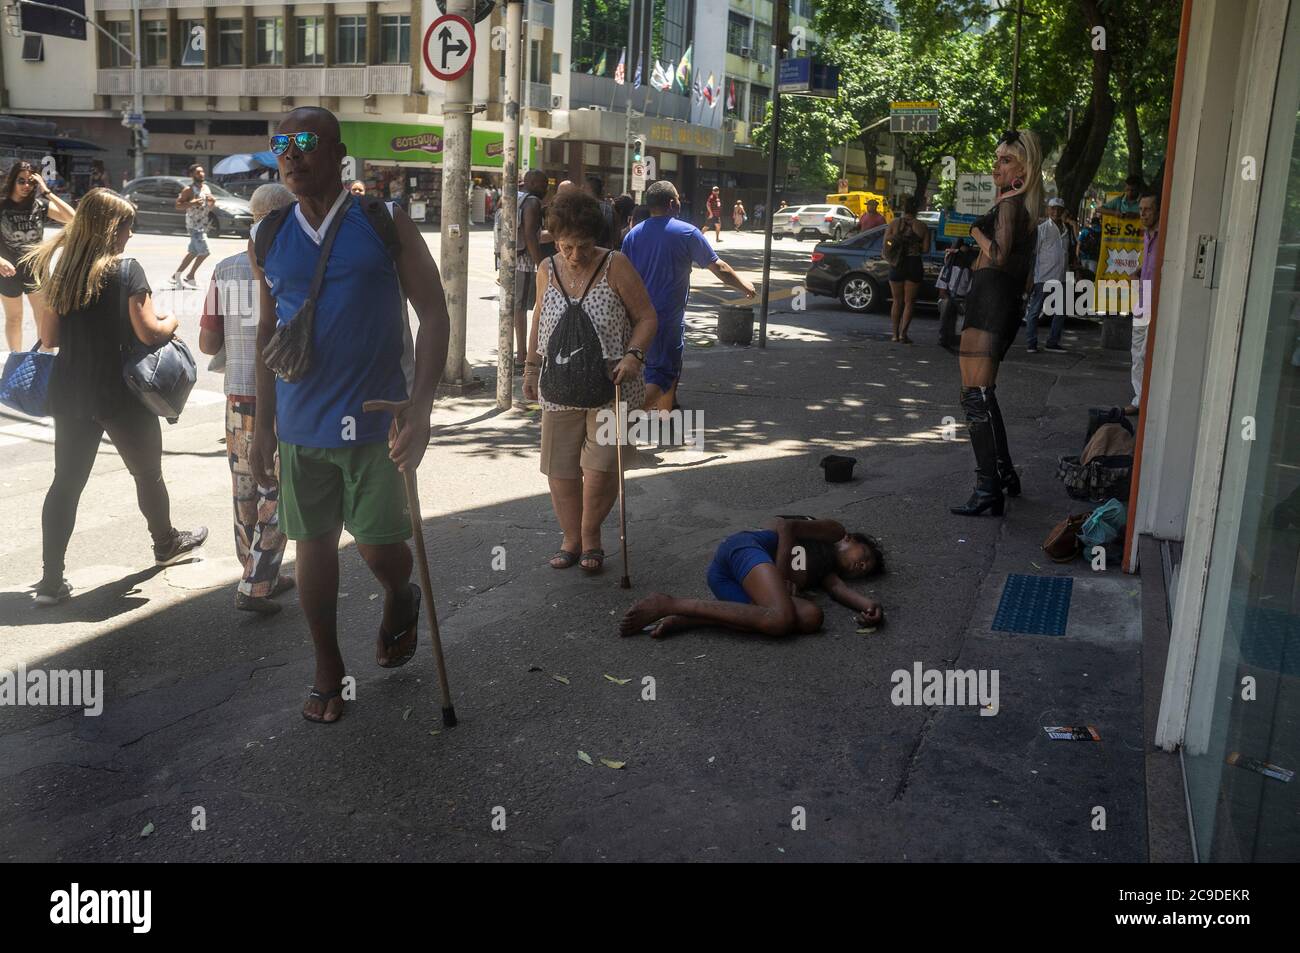 Vida cotidiana en el barrio de Copacabana, los peatones que usan bastones de caminar pasan por un espectáculo de travestis y un débil niño de la calle durmiendo en el suelo. Foto de stock